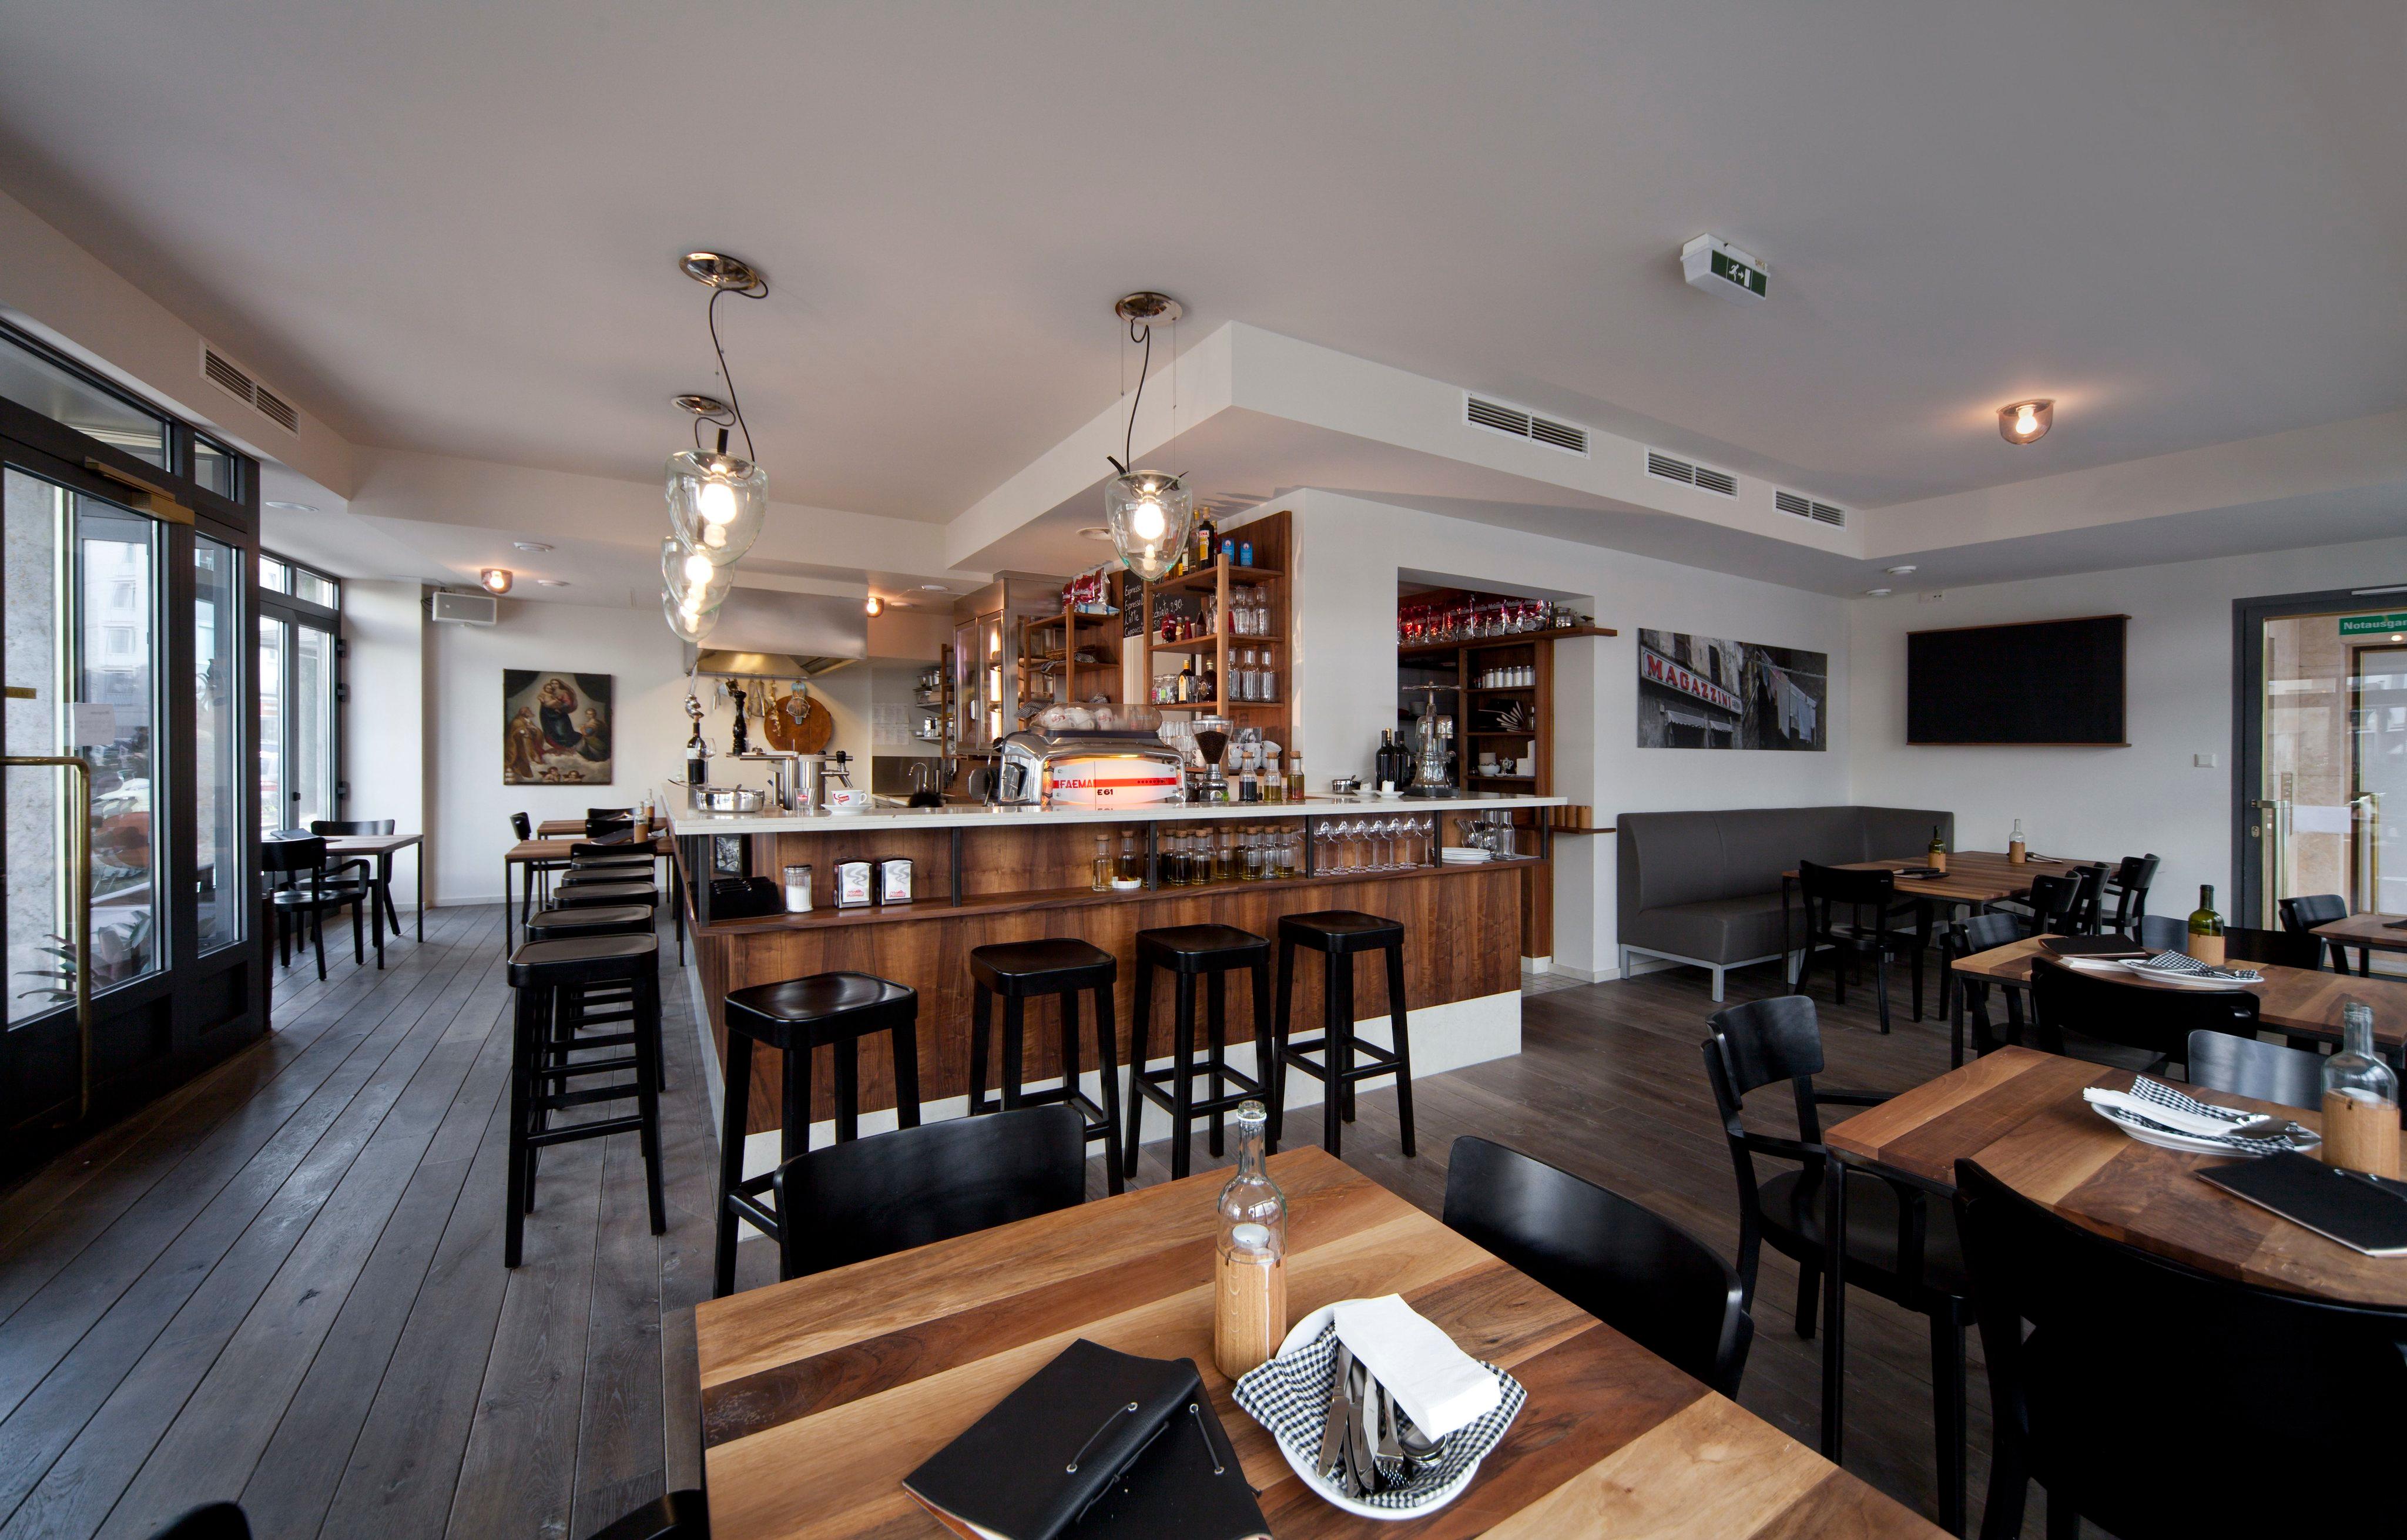 Eine Bar mit Werten #stuhl #barhocker #tisch ©Eckhard Rahaus / Design by colourforn